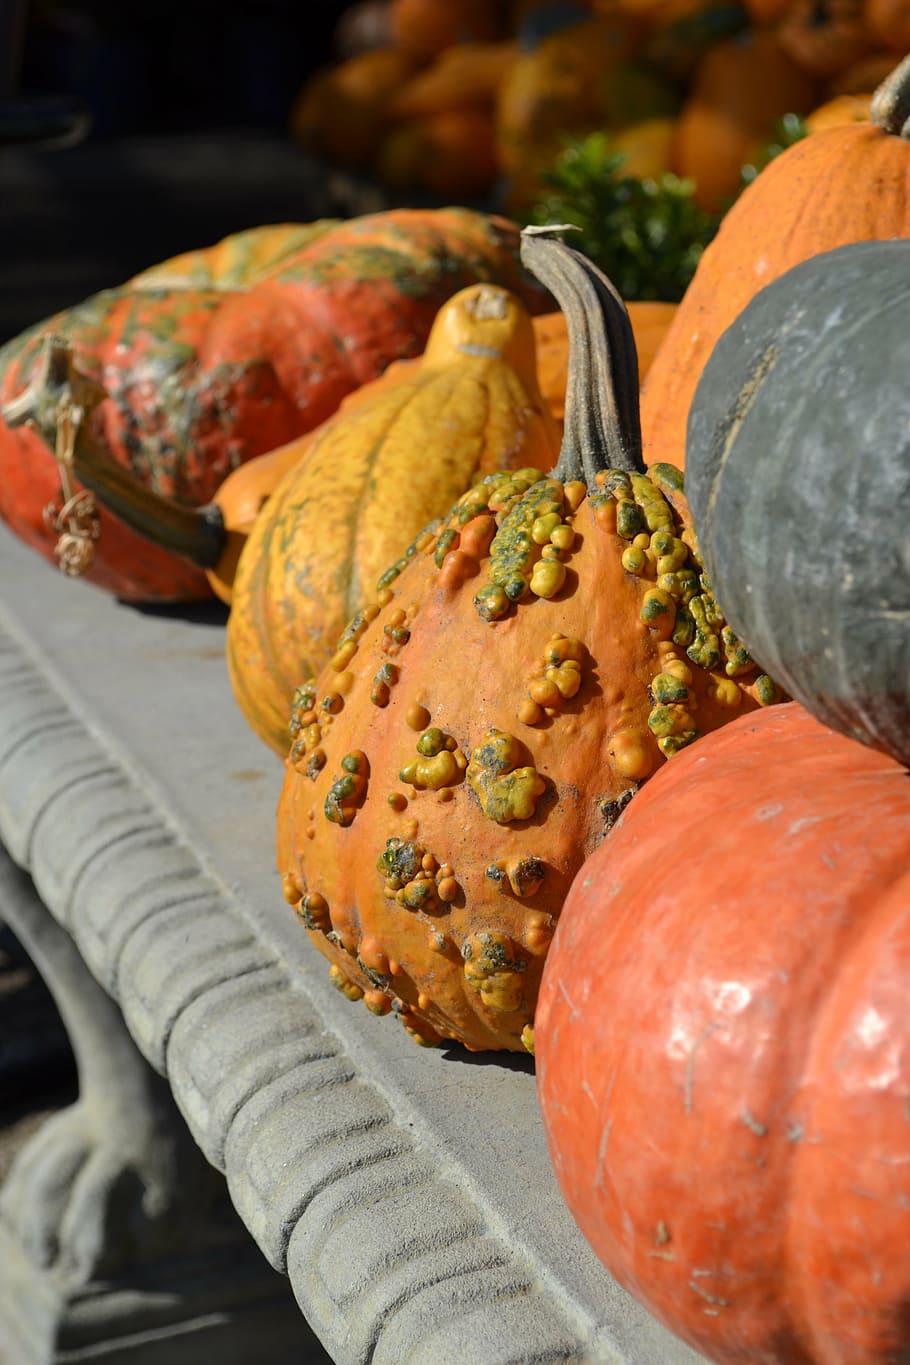 calabazas, otoño, cosecha, decoración, comida y bebida, comida, frescura, vegetales, alimentación saludable, bienestar